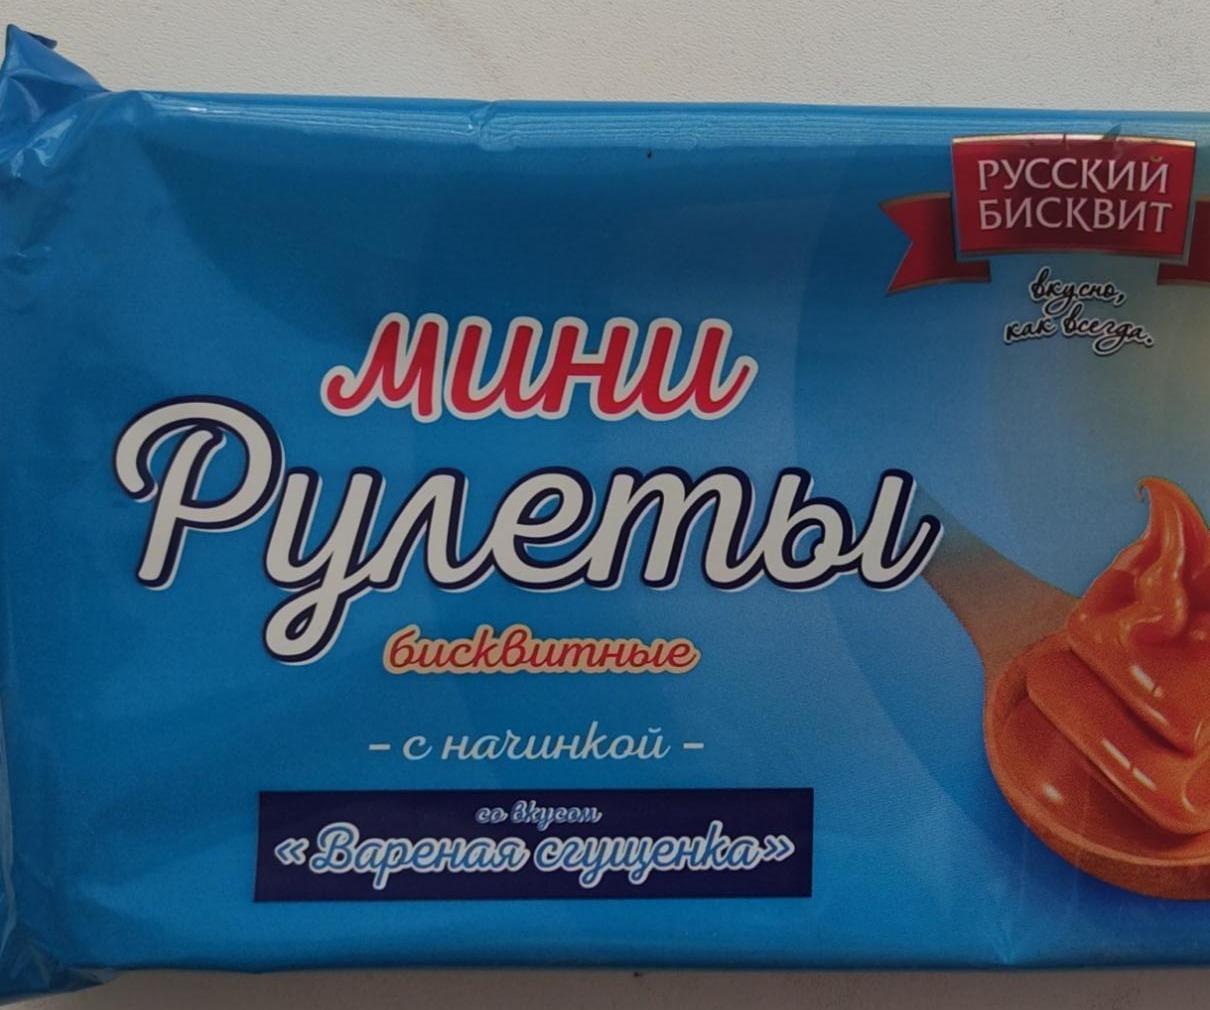 Фото - Мини Рулеты бисквитные со вкусом вареная сгущенка Русский бисквит